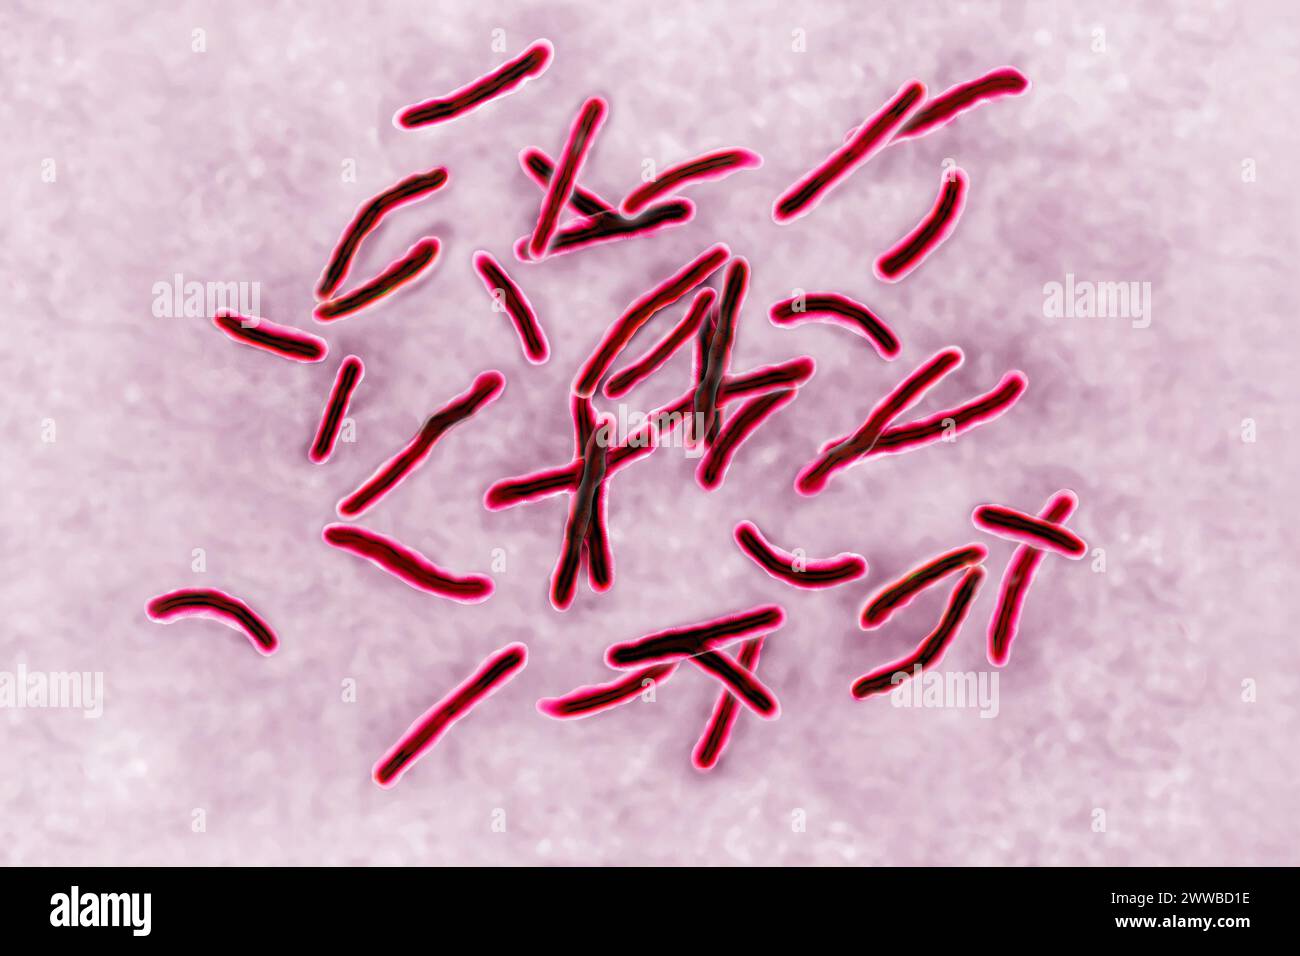 Bacillus Koch (Bk) or Mycobacterium tuberculosis, it is responsible for tuberculosis. Stock Photo